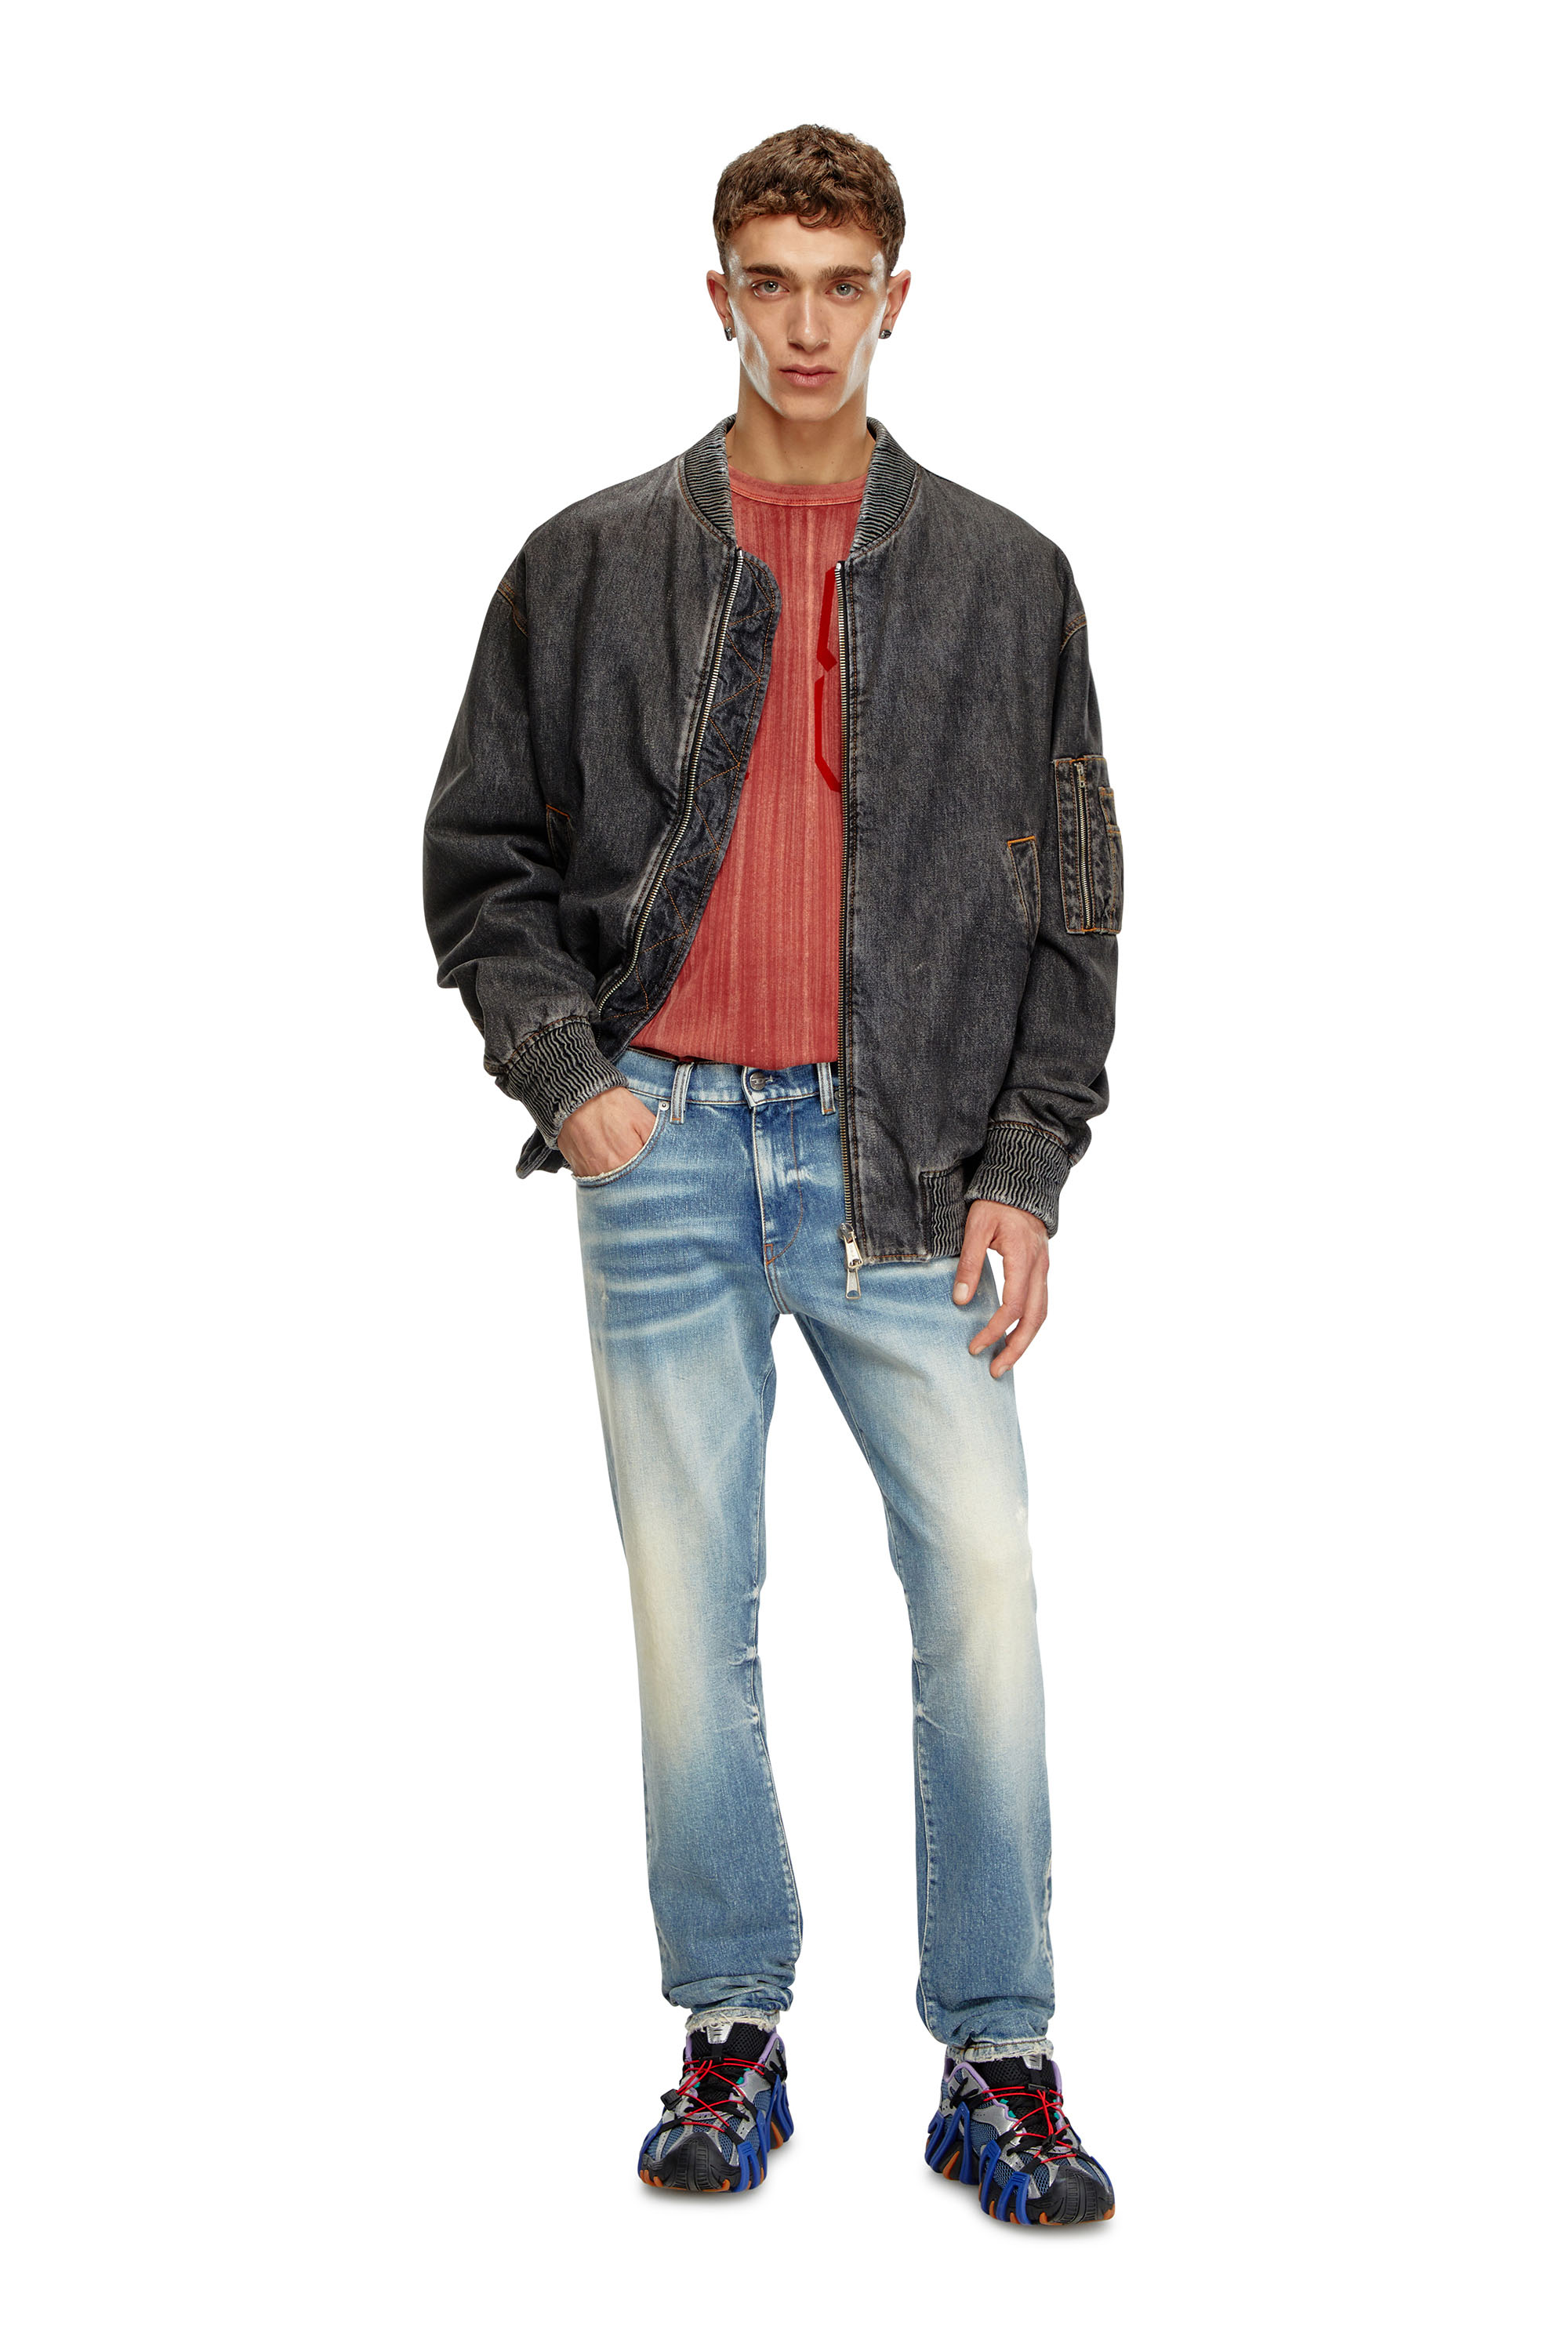 Diesel - Slim Jeans 2019 D-Strukt 007V8, Hombre Slim Jeans - 2019 D-Strukt in Azul marino - Image 2